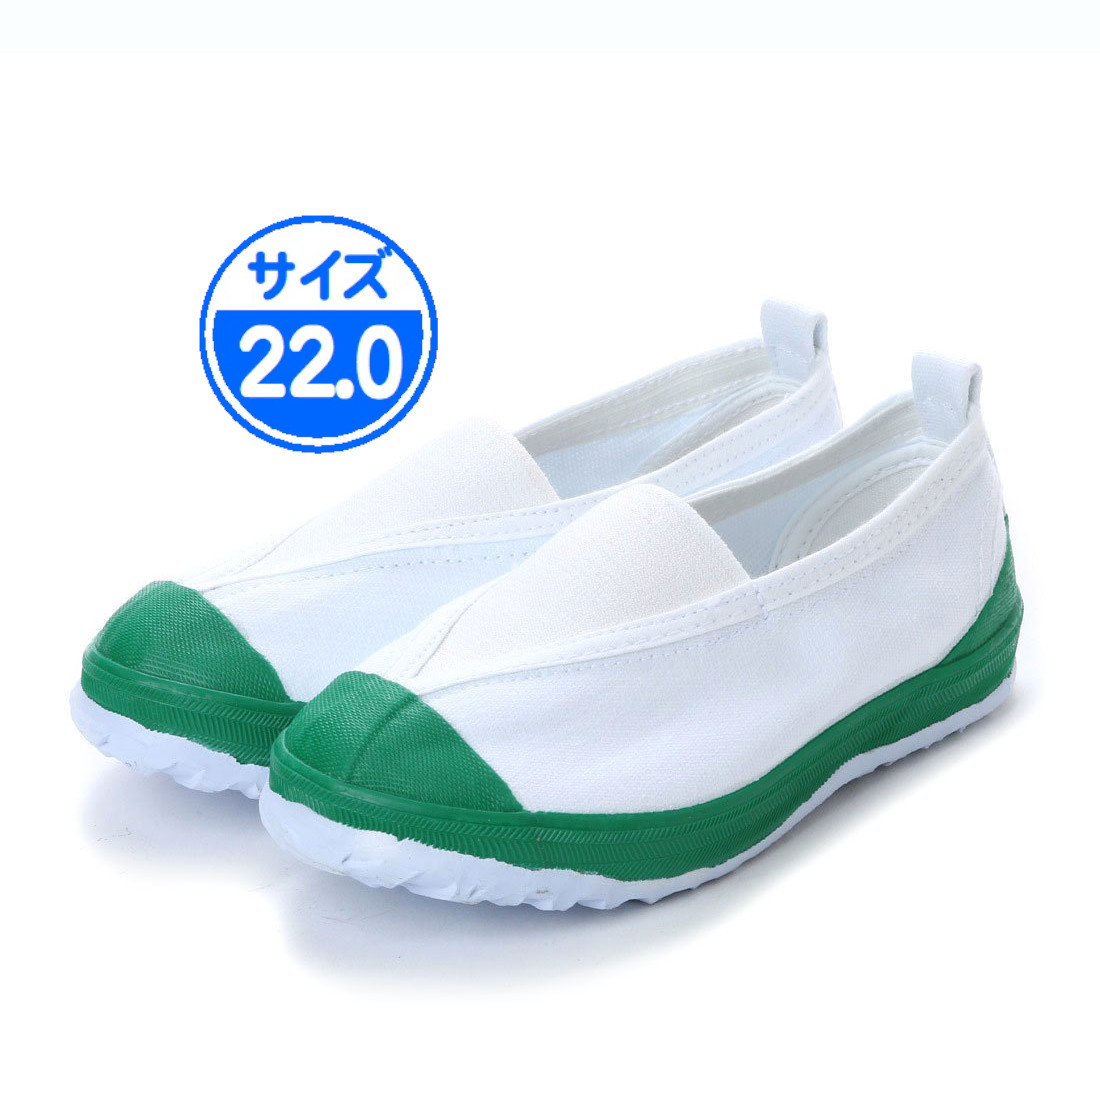 [ новый товар не использовался ]18999 сменная обувь зеленый 22.0cm зеленый 